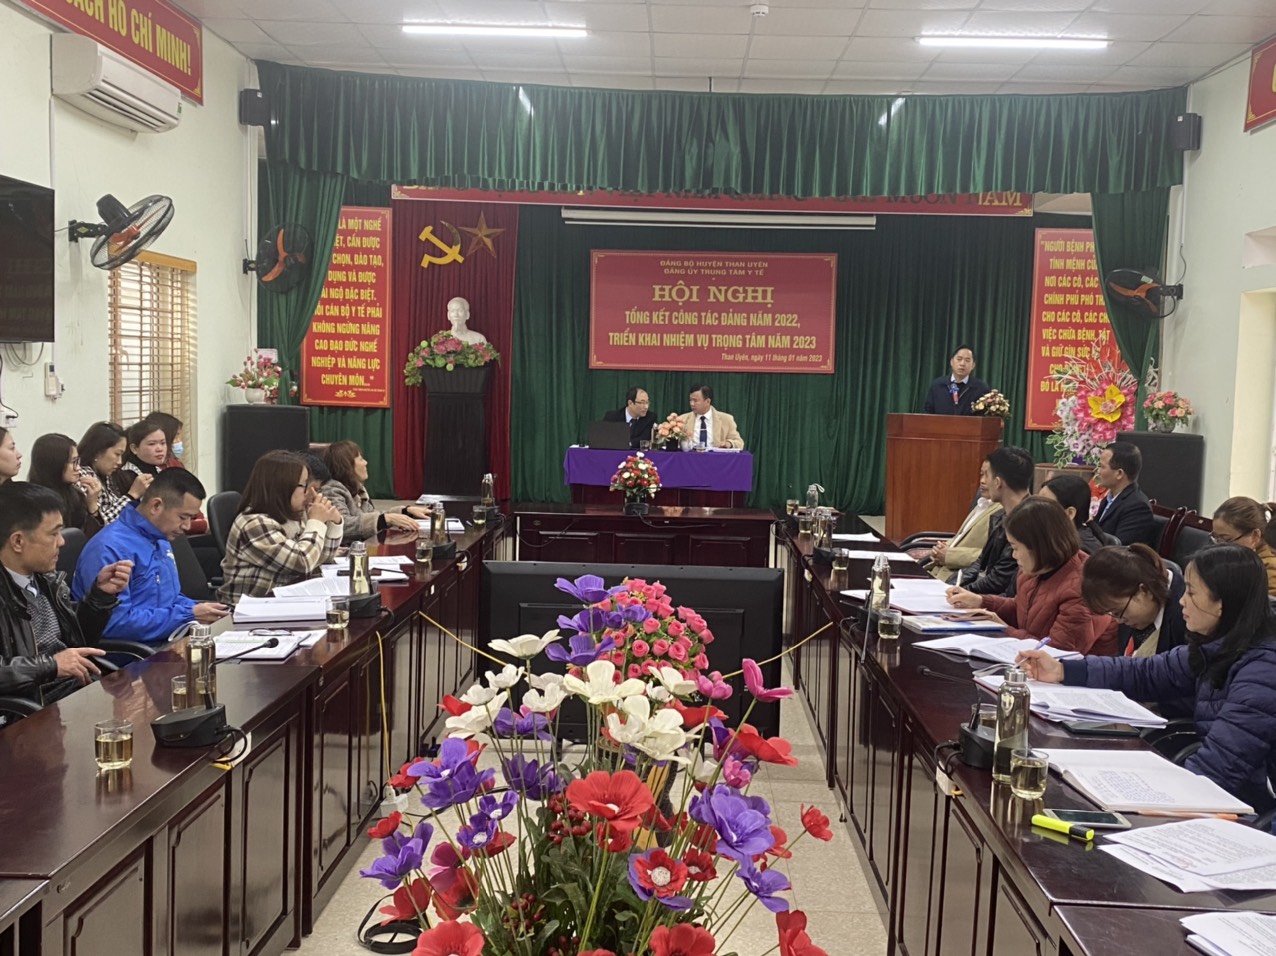 Đc Trần Quang Chiến - Phó Chủ tịch UBND phát biểu chỉ đạo tại Hội nghị